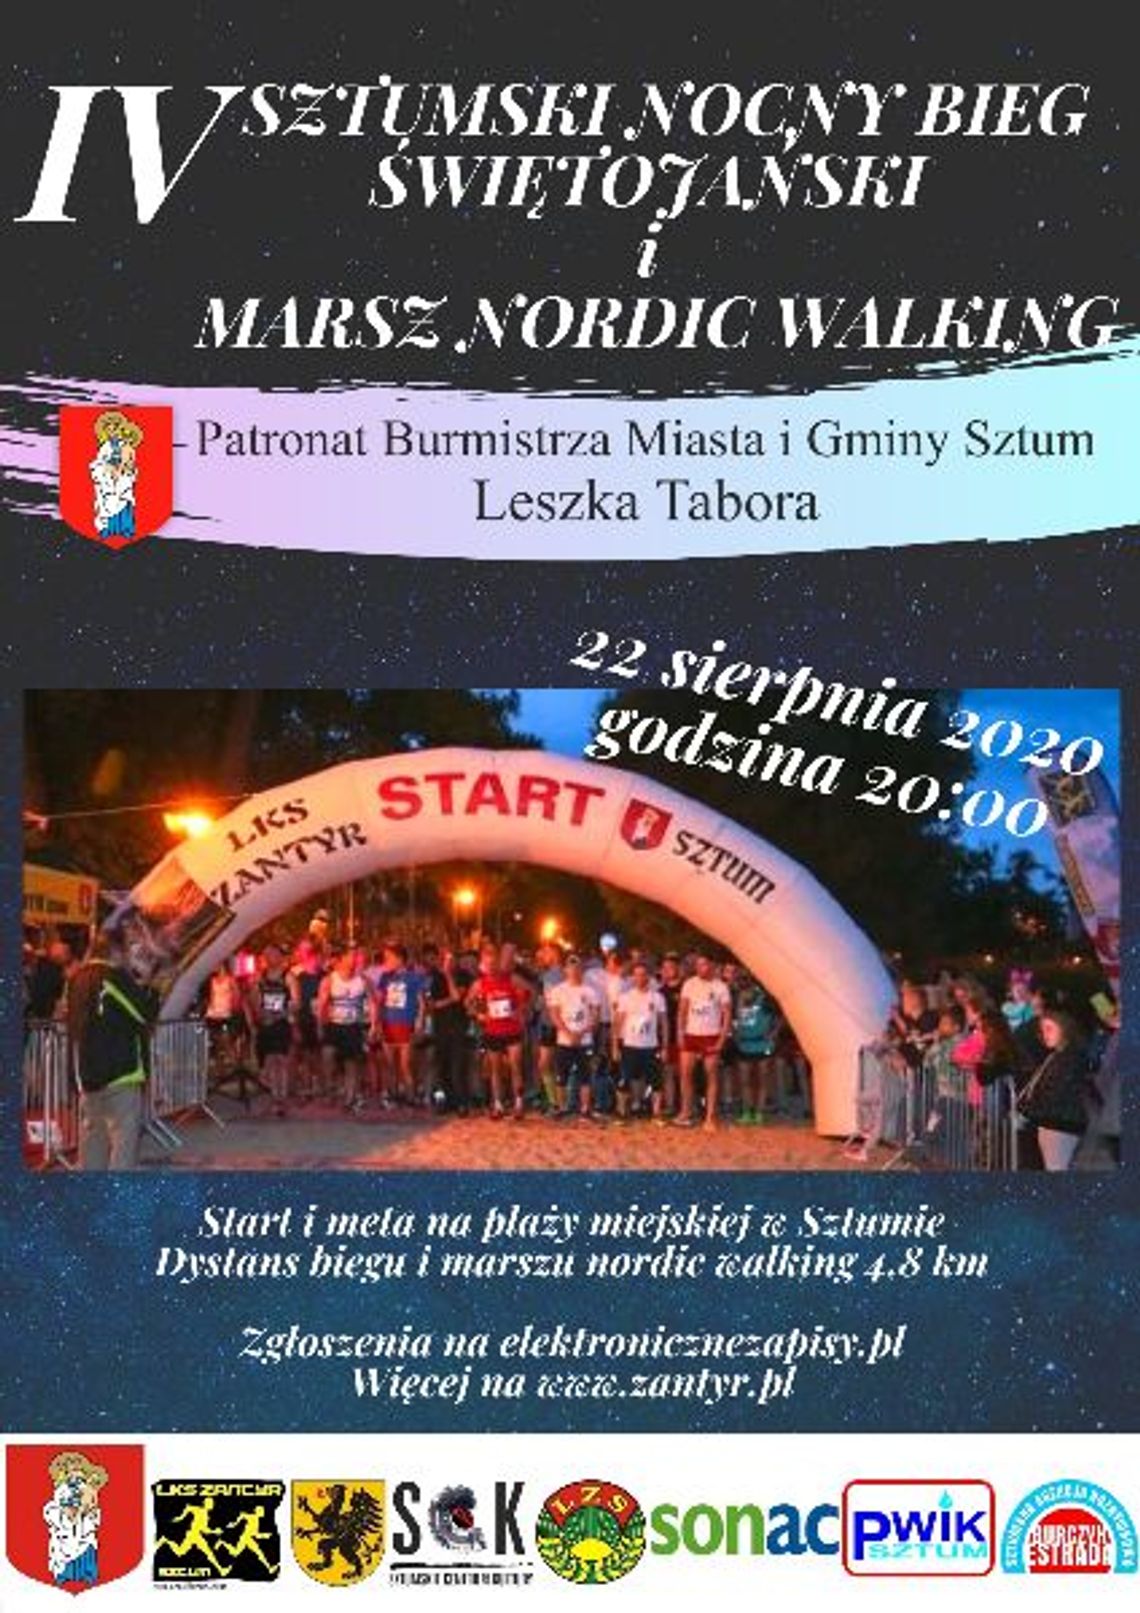 IV Sztumski Nocny Bieg Świętojański i Marsz Nordic Walking